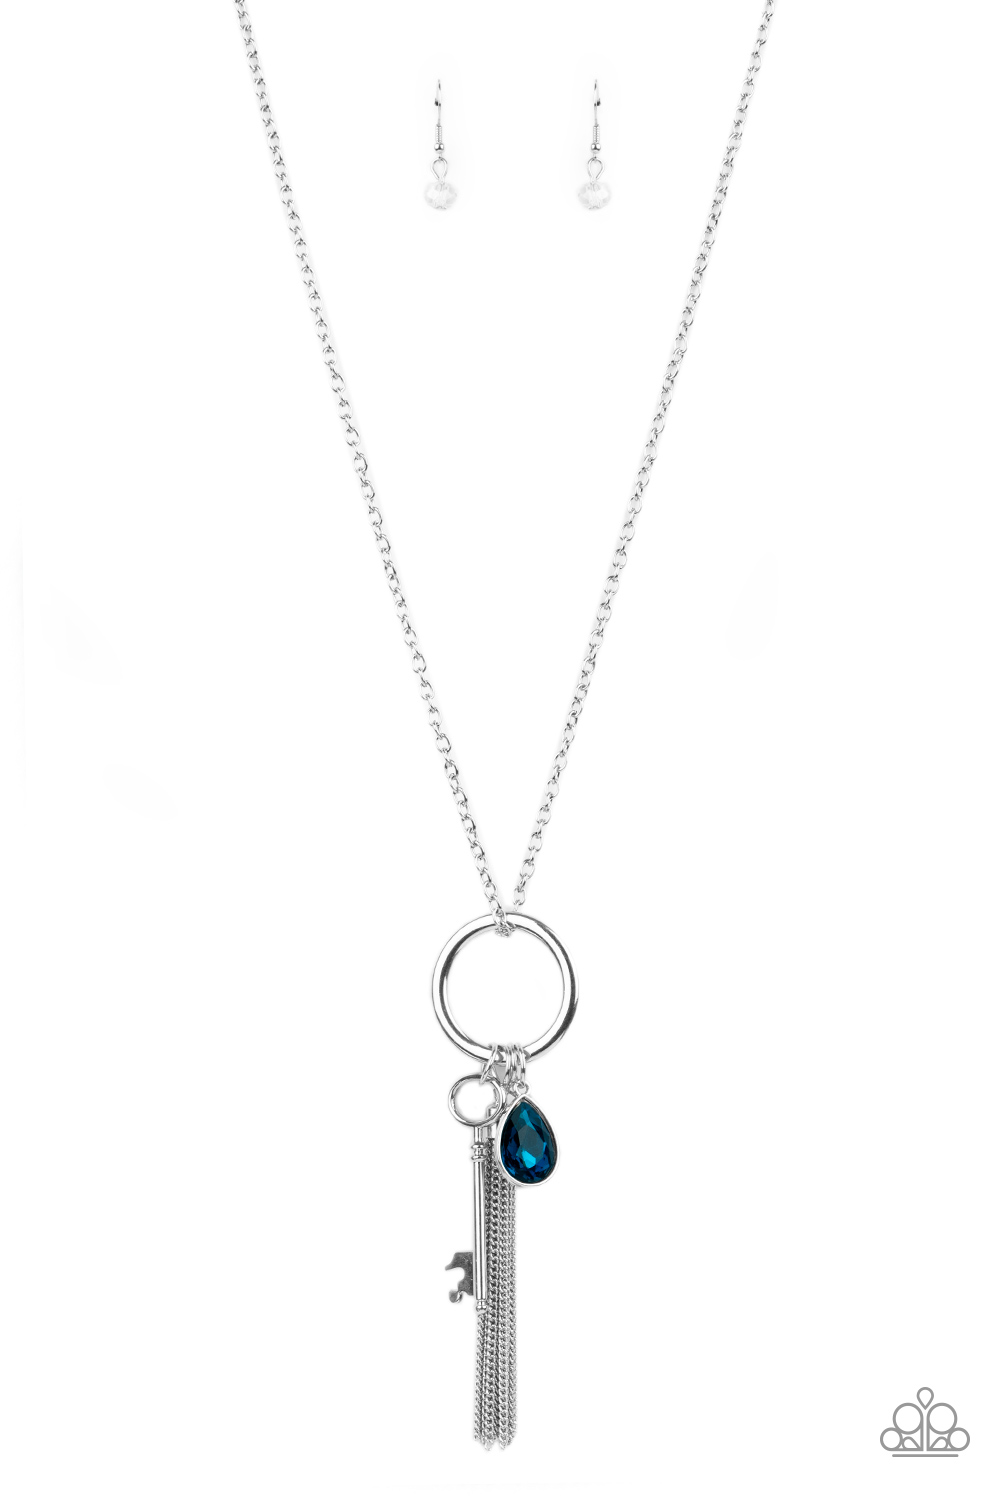 Unlock Your Sparkle - Blue - Paparazzi Accessories Necklace